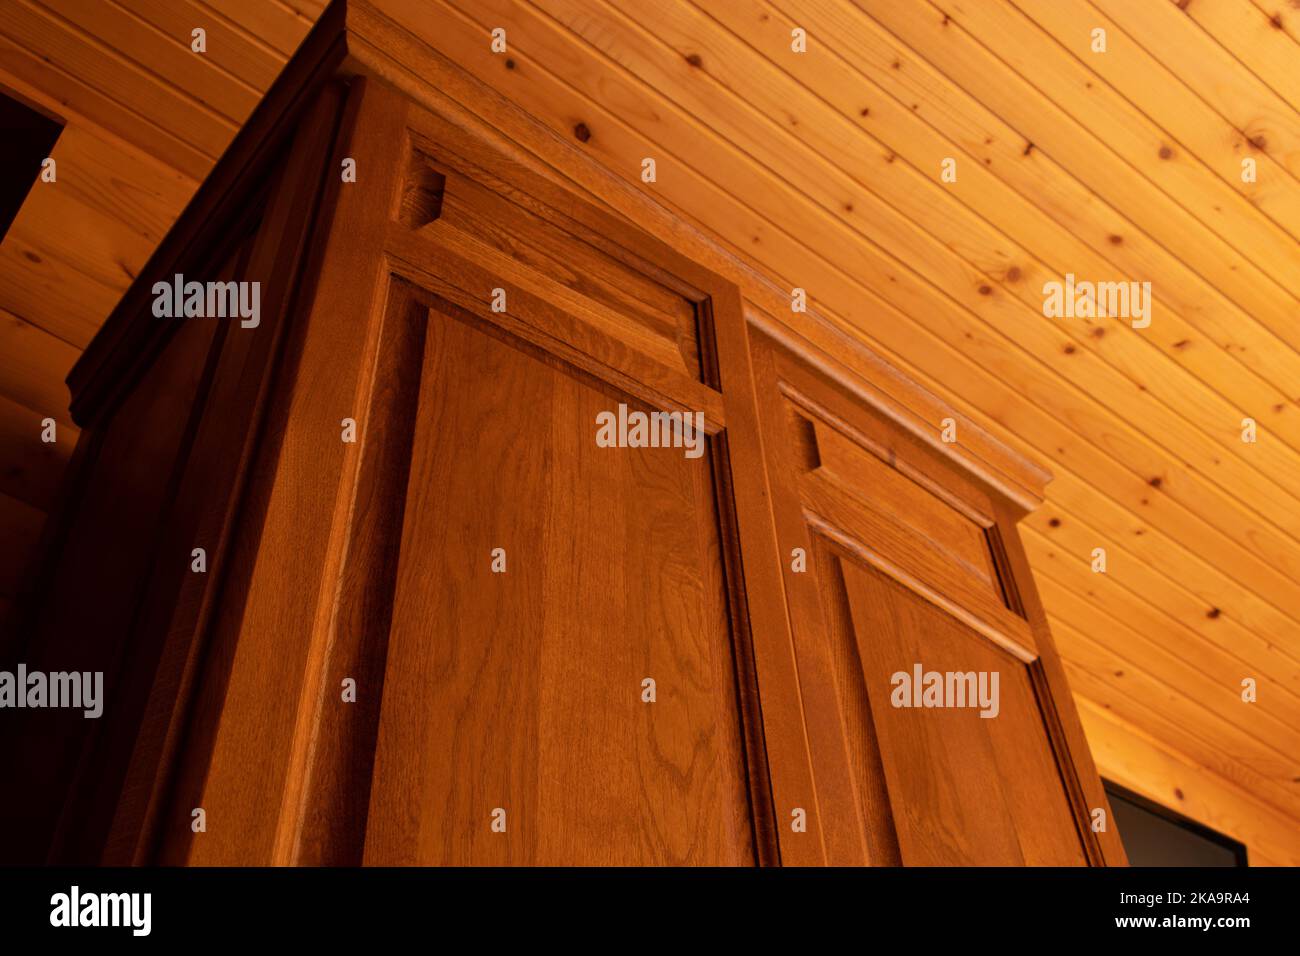 Armoire en bois dans une pièce avec des murs en bois, intérieur en bois dans la maison, vue sur le plafond et l'armoire de bas en haut Banque D'Images